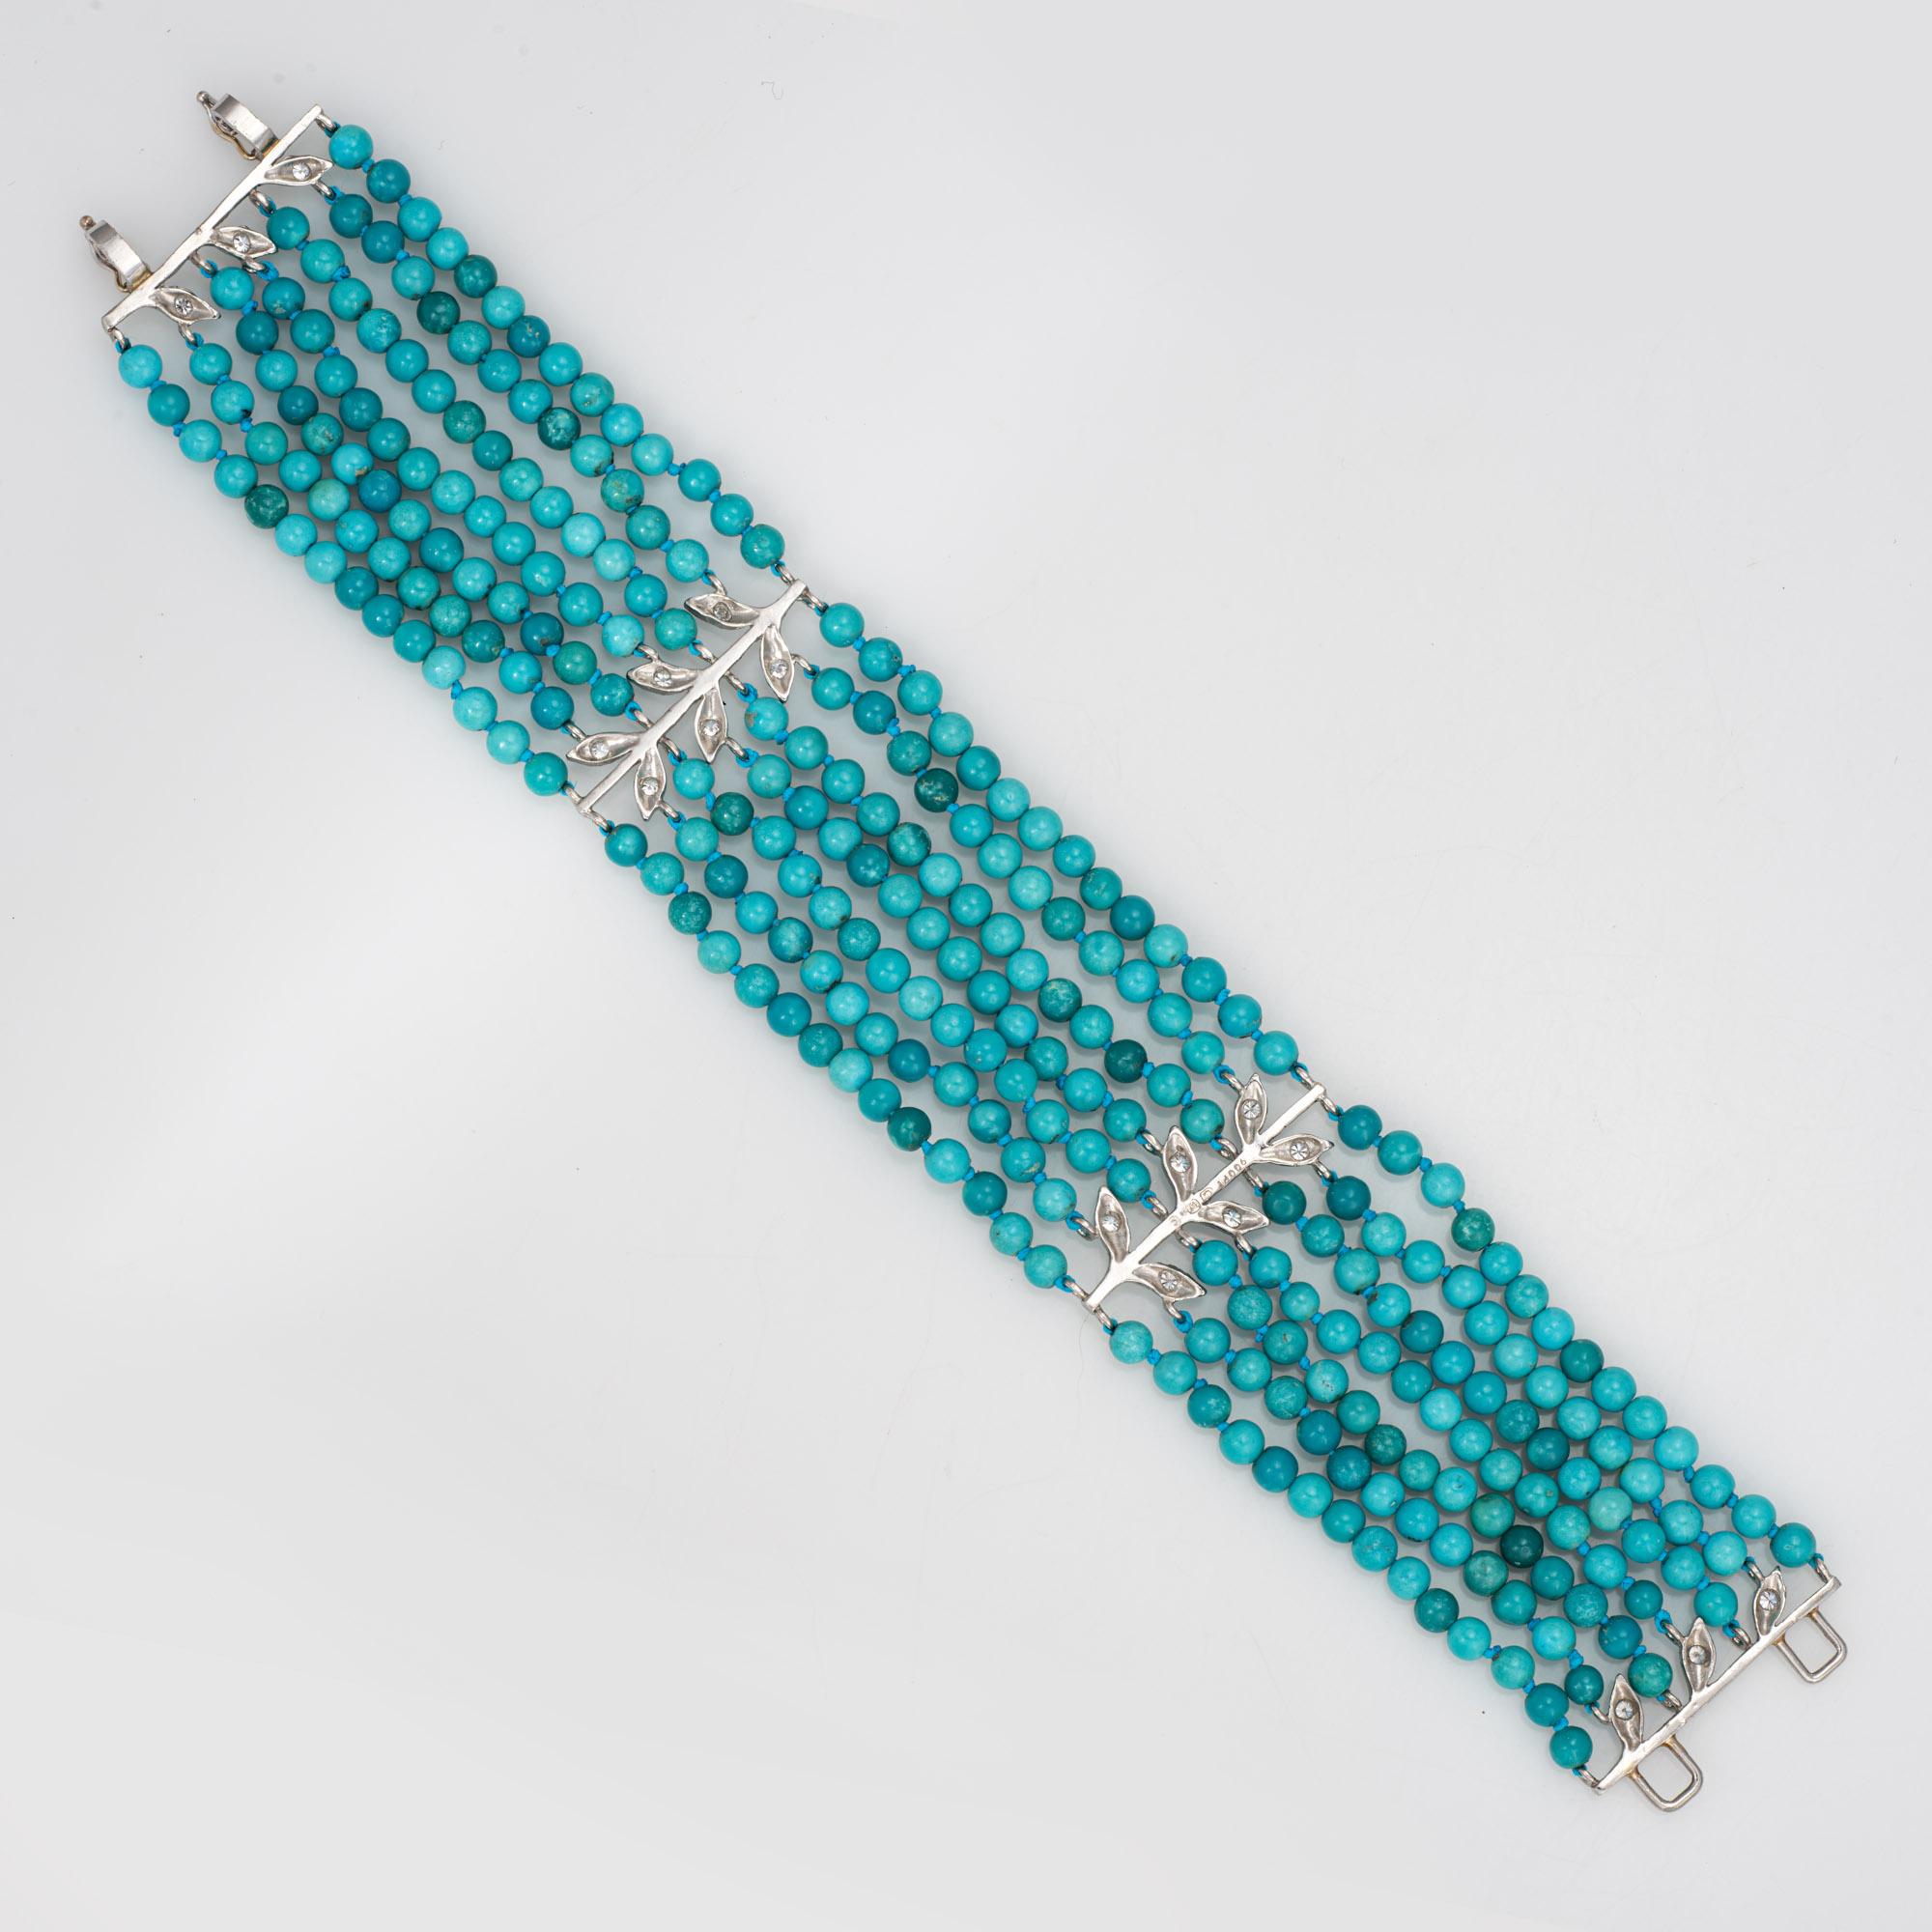 Bracelet 7 rangs de turquoise et de diamants de Cathy Waterman, en platine 900. 

Sept rangs de perles turquoises mesurent 3,5 mm chacun. Le total des diamants est estimé à 0,18 carats (couleur H-I et pureté VS2-SI1). Note : variance de couleur et